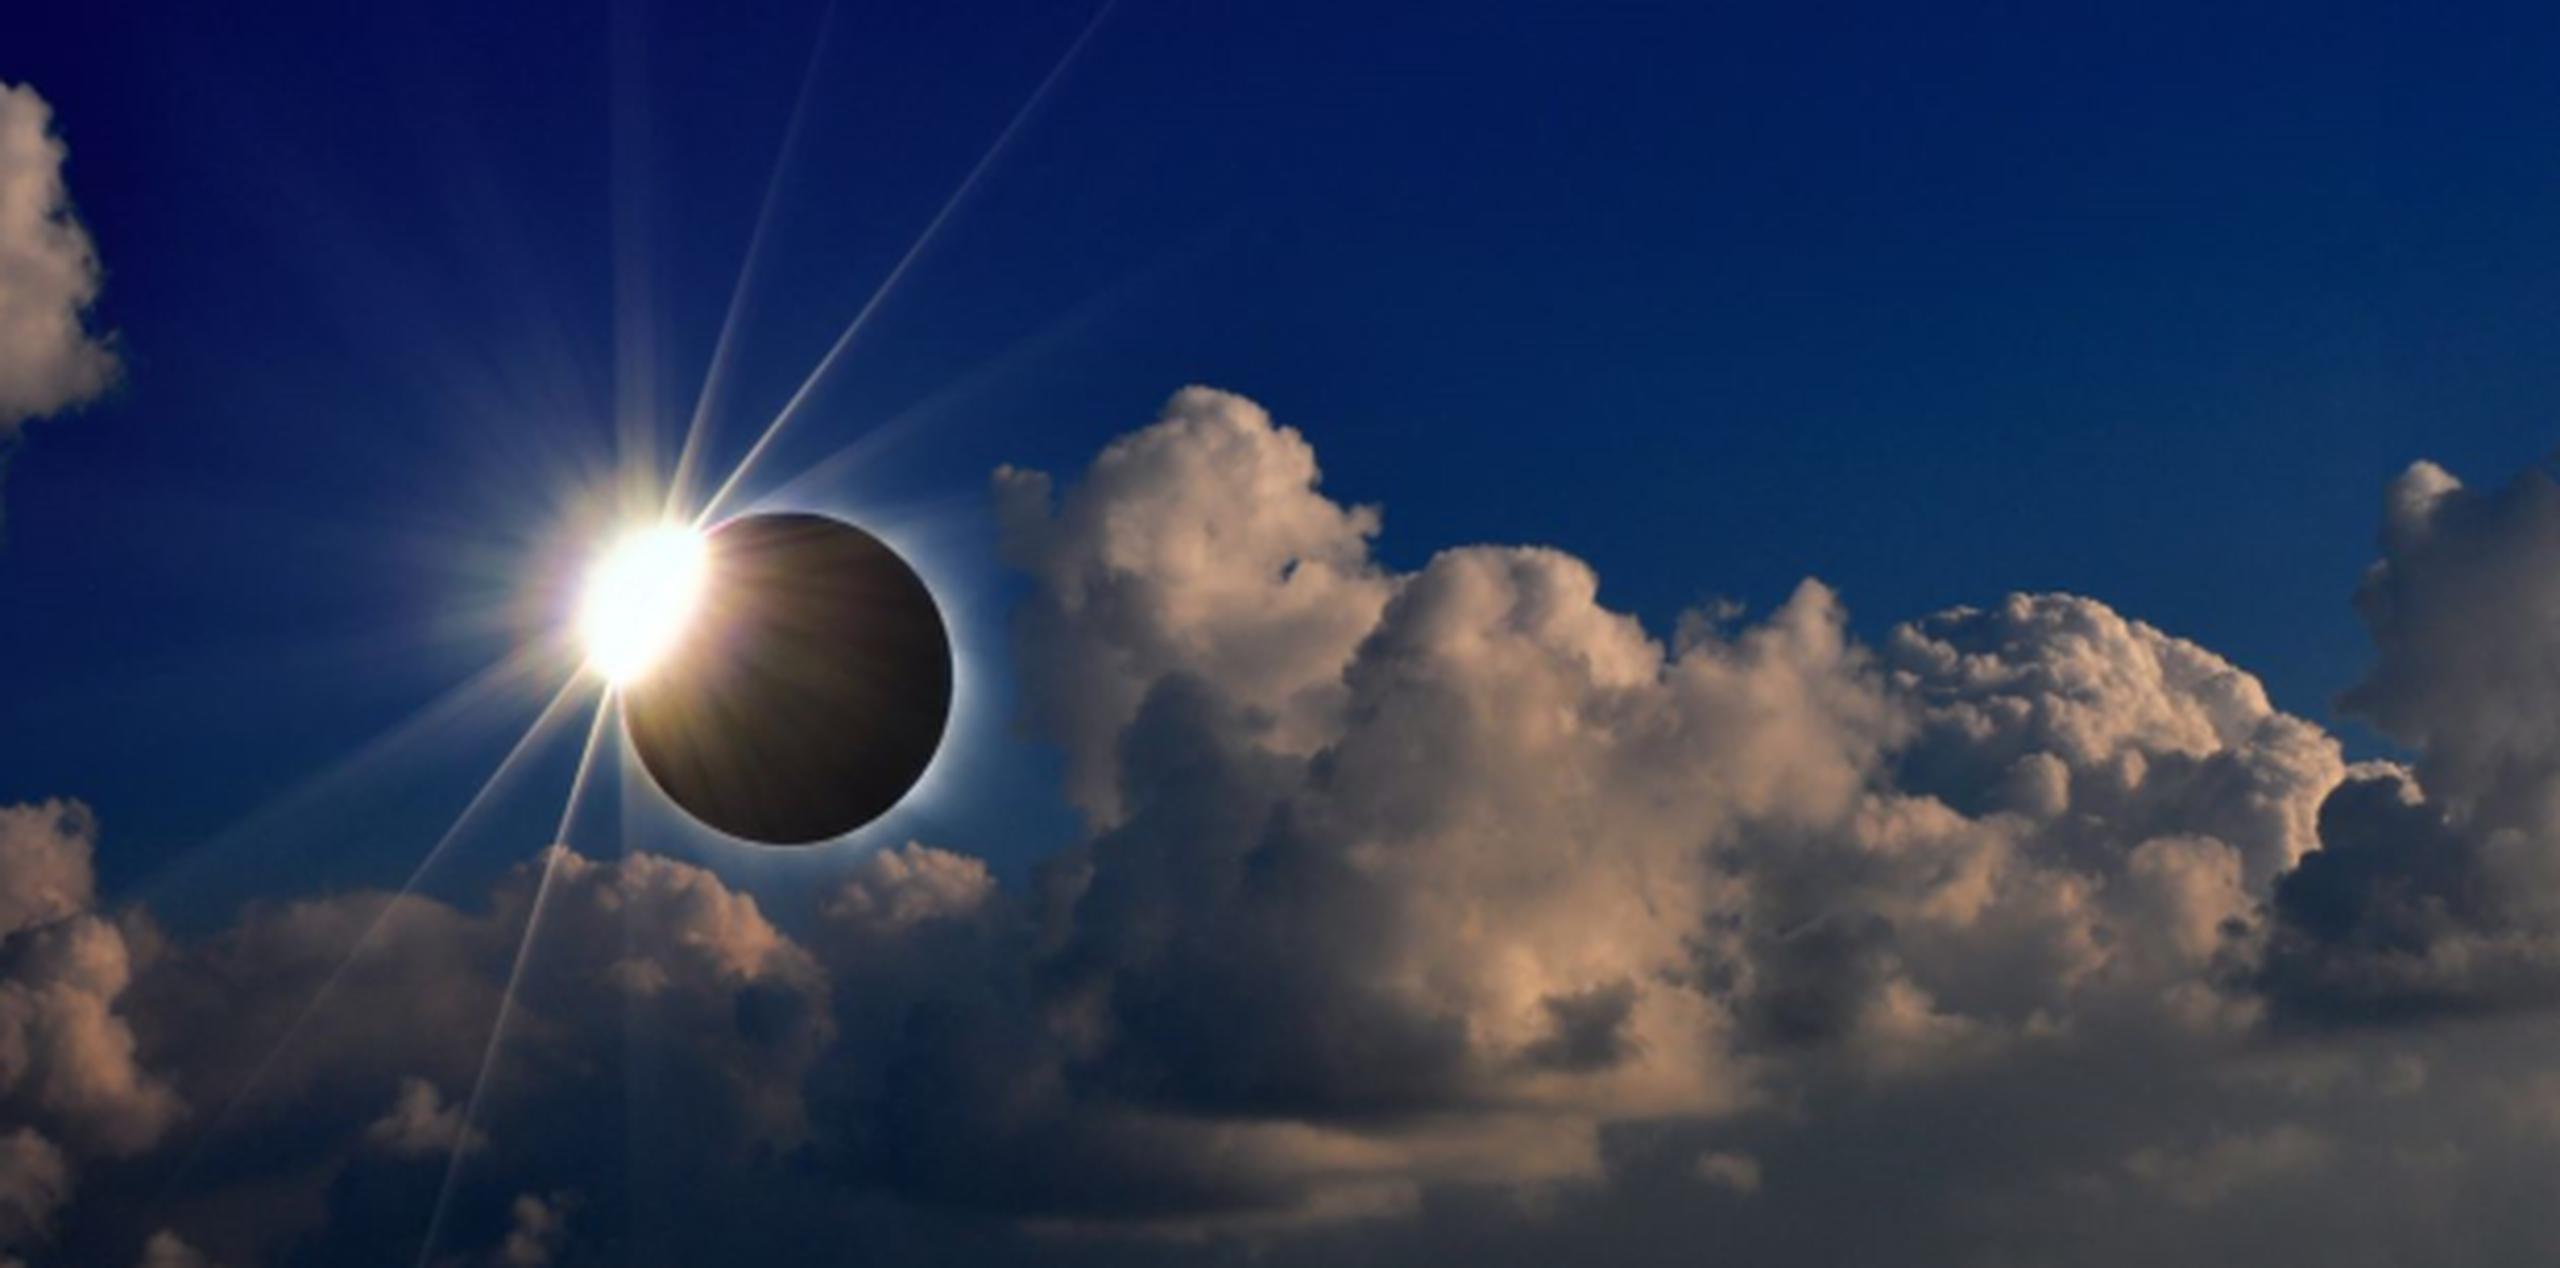 Un total de 14 estados podrá ver la totalidad de este místico evento celestial. (Shutterstock)